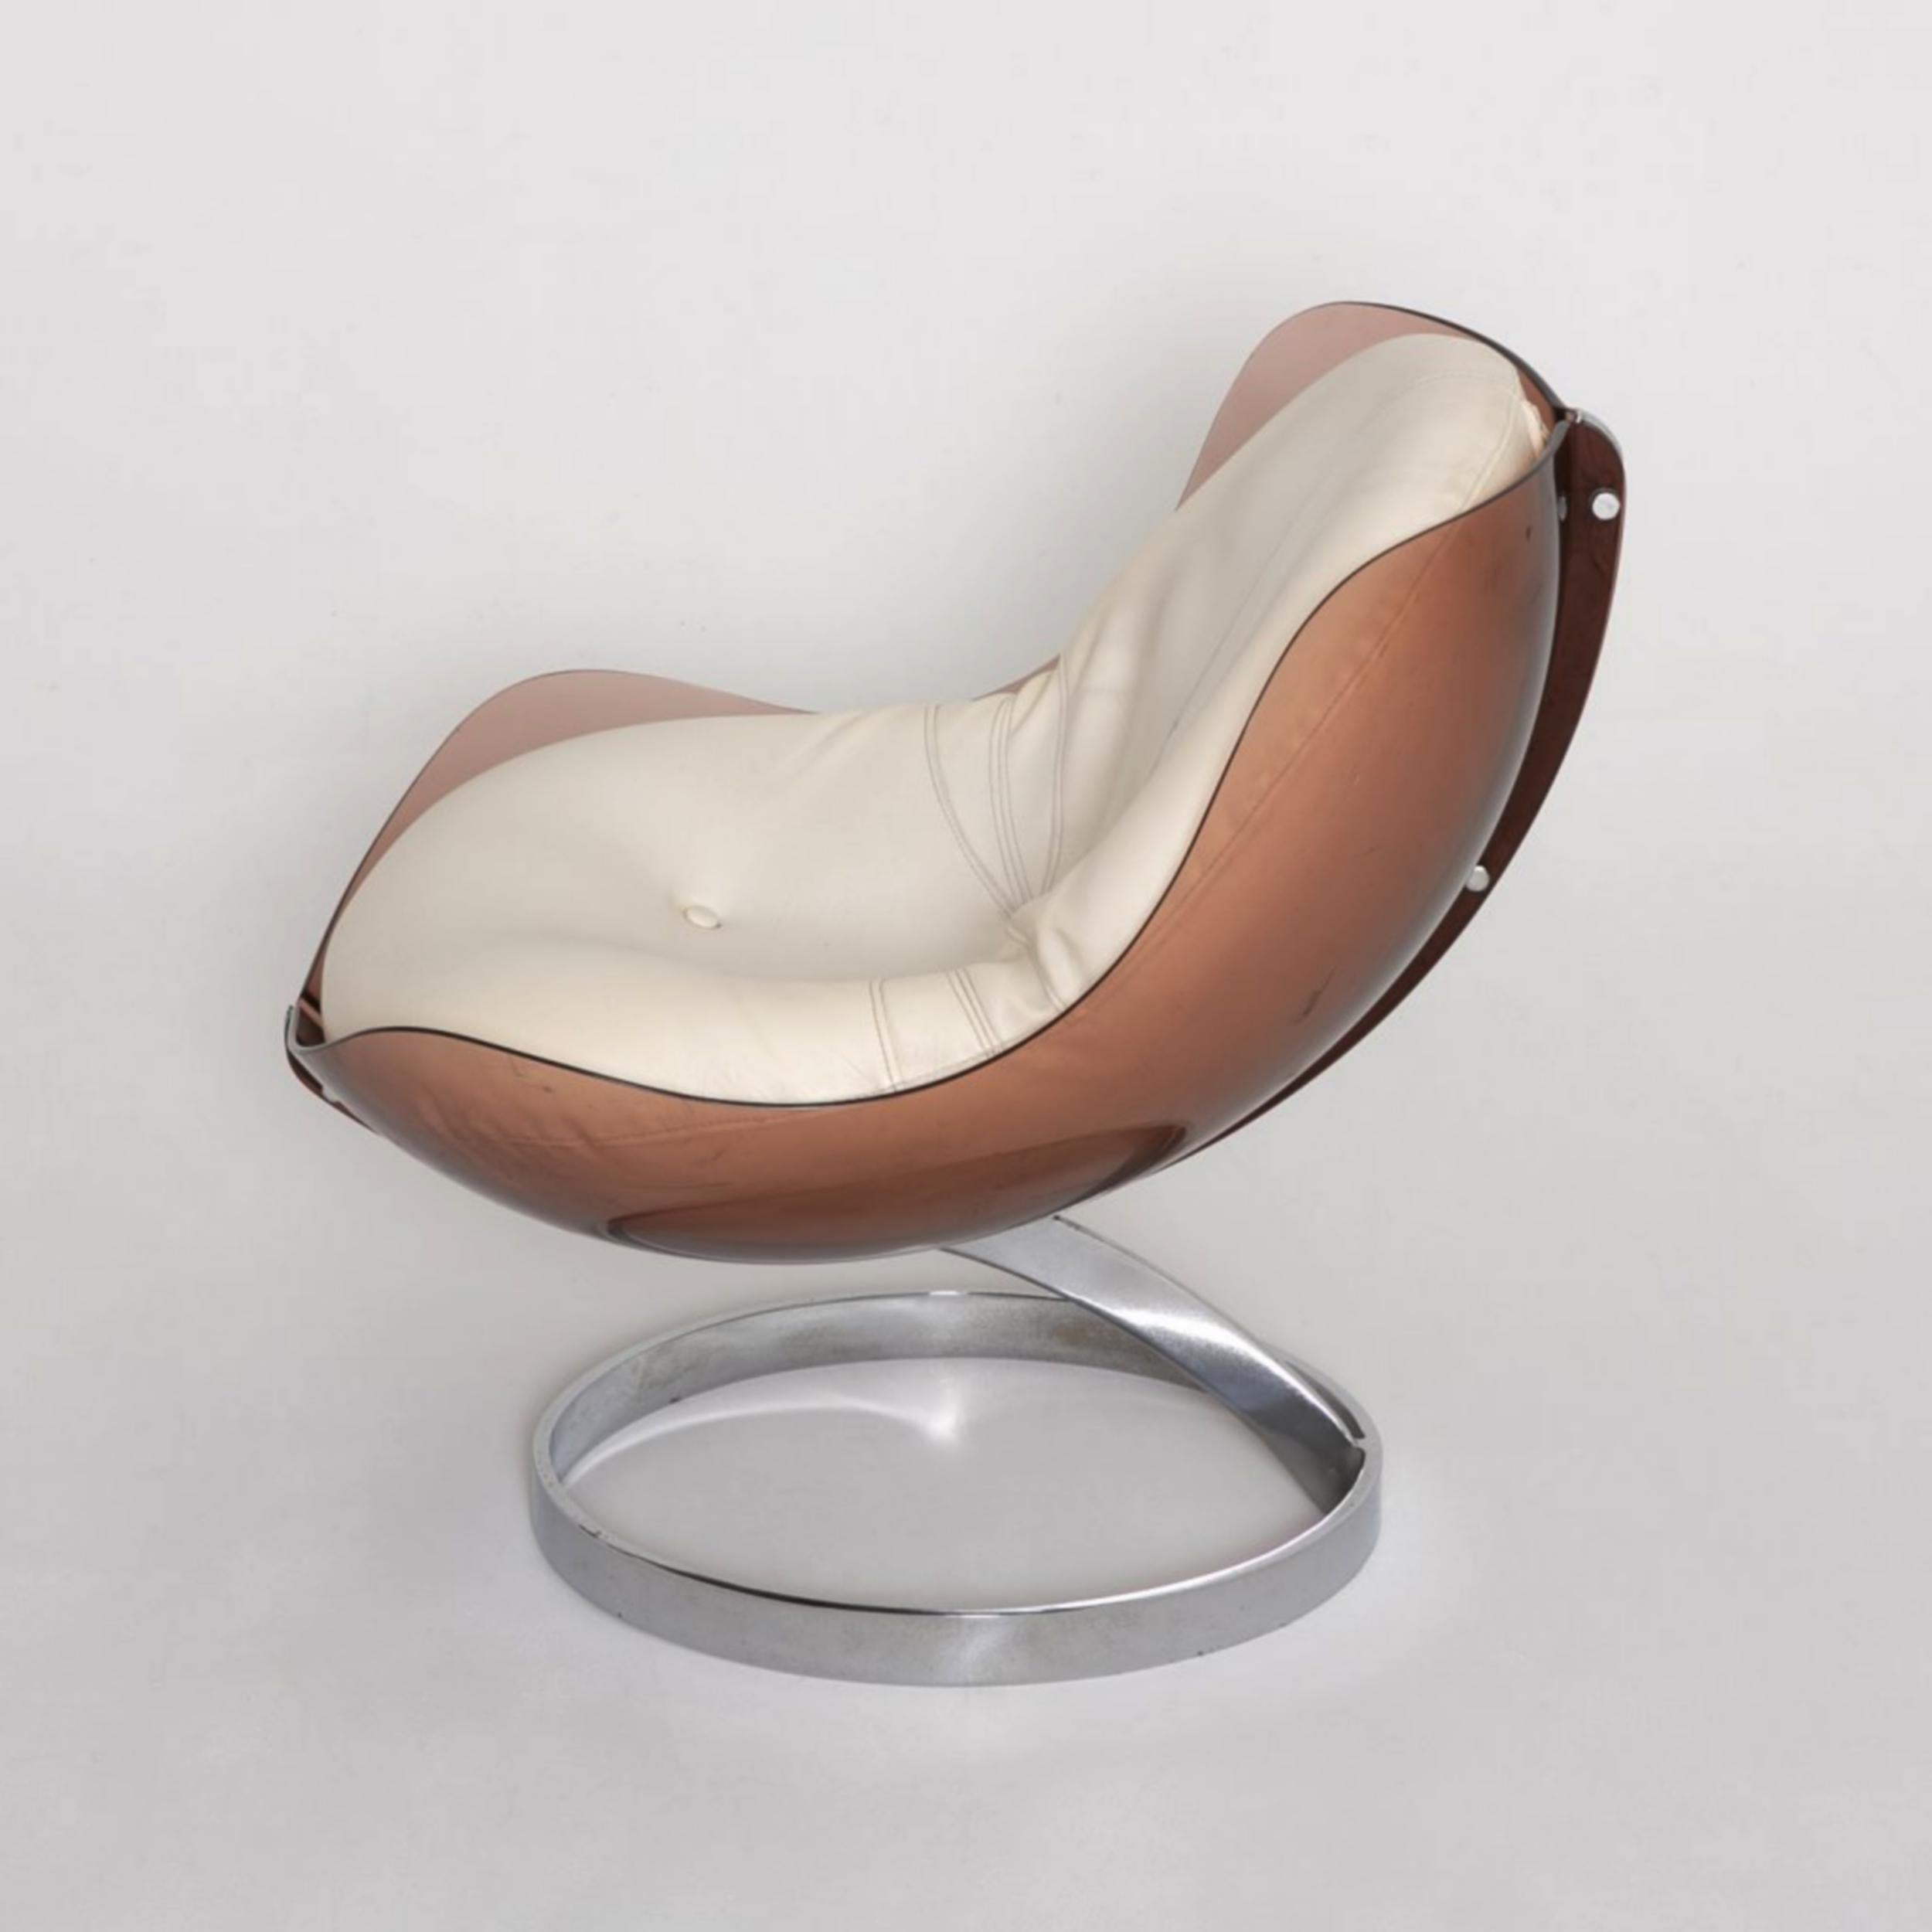 Sessel, entworfen von Boris Tabacoff 1971 für M.M.M. (Mobilier Modulaire Moderne). Sie bestehen aus zwei braunen, geräucherten Plexiglashalbschalen, die mit einem verchromten Metallrahmen verschraubt sind. Die Polsterkissen sind abnehmbar, bestehen